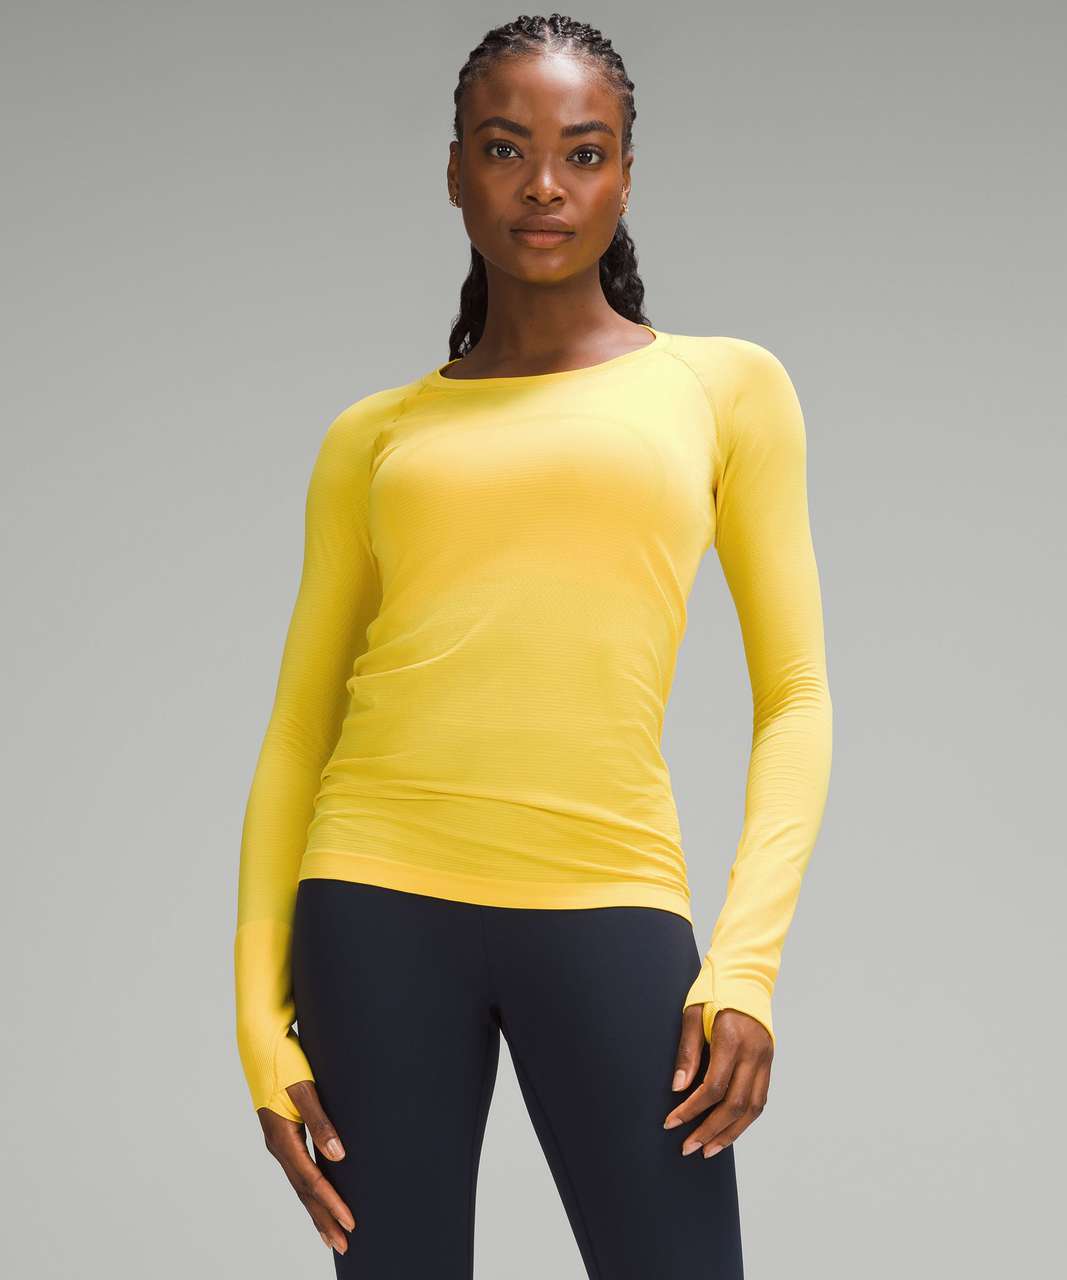 Lululemon Swiftly Tech Long-Sleeve Shirt 2.0 - Utility Yellow / Utility Yellow